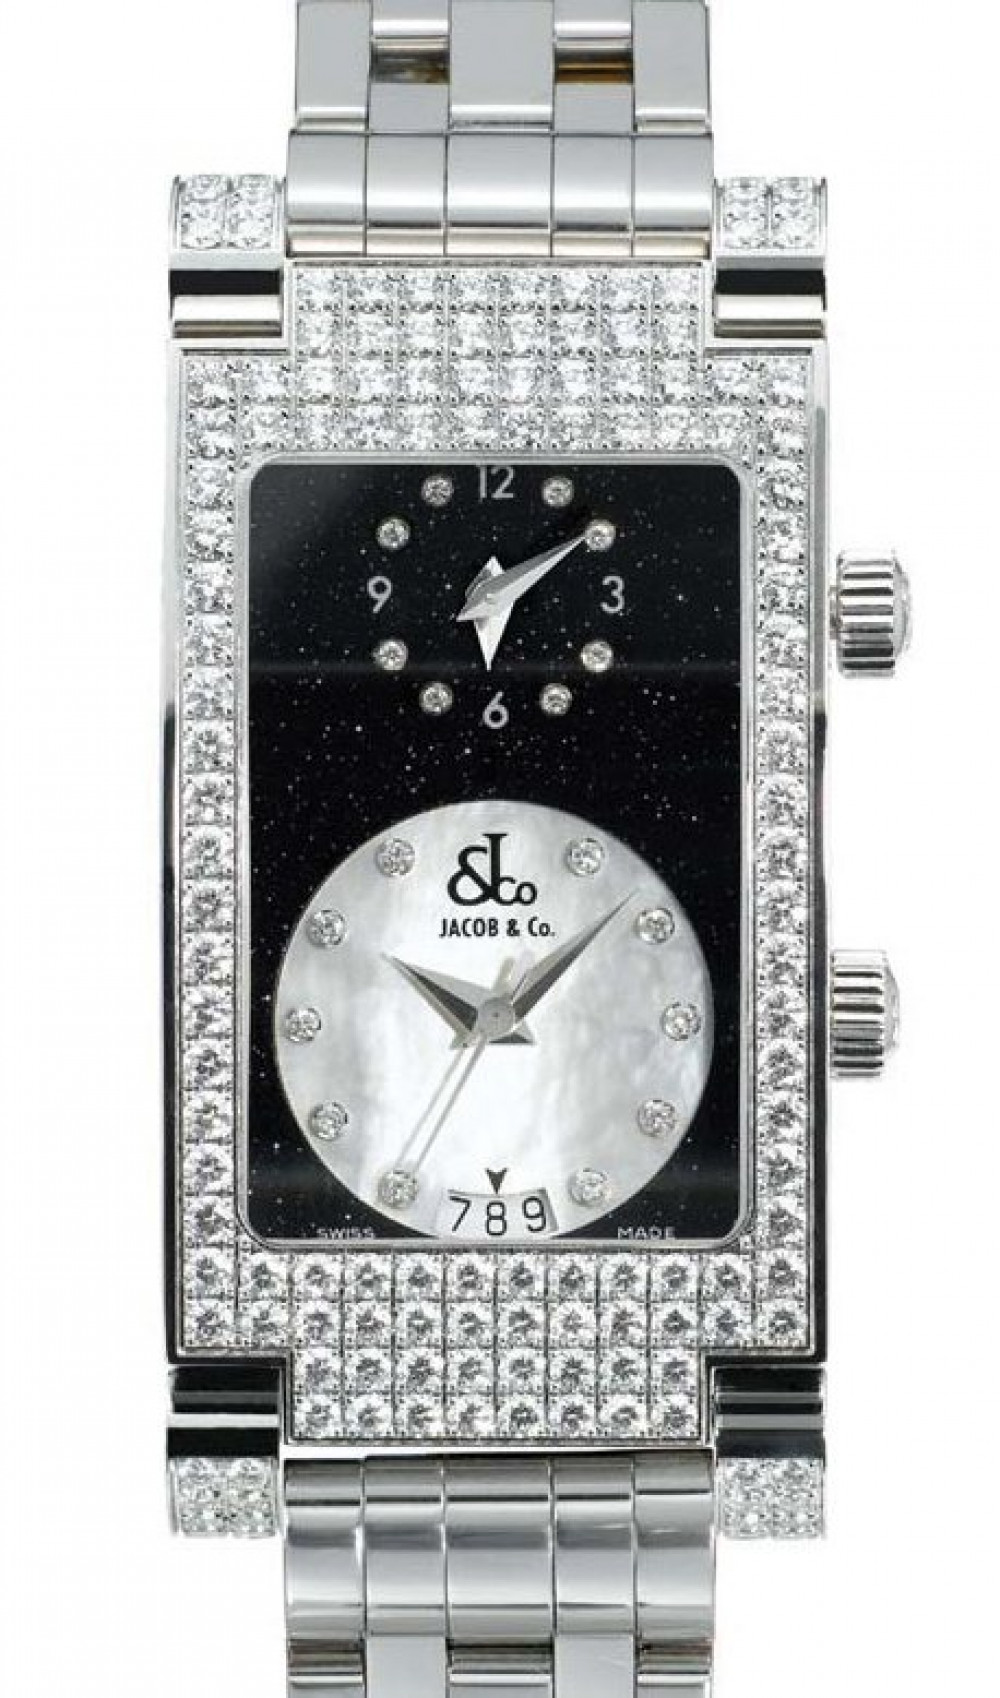 Zegarek firmy Jacob & Co, model Angel Watch